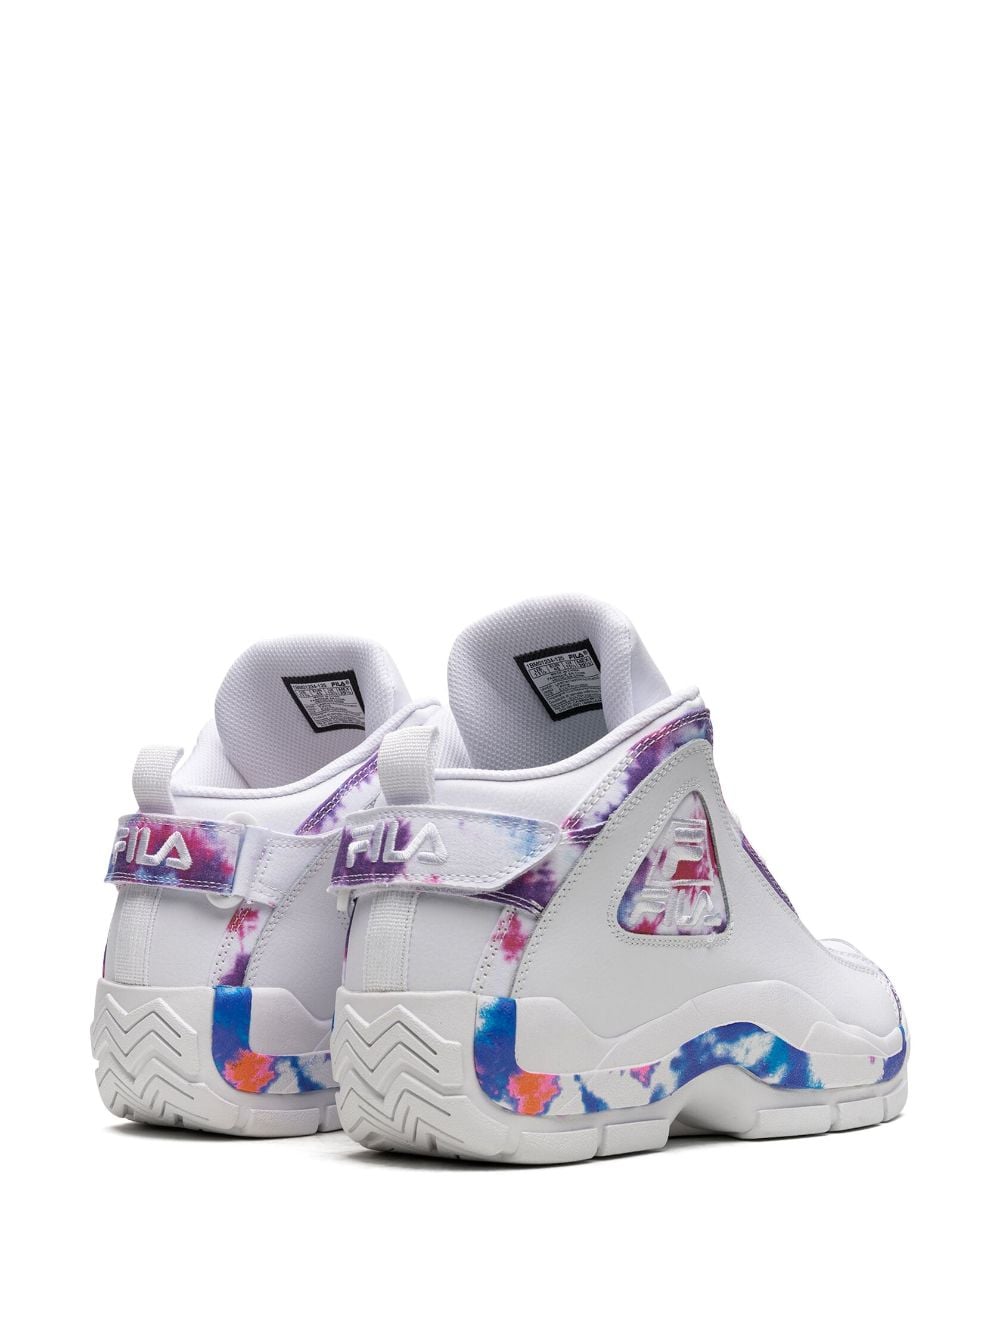 Shop Fila Grant Hill 2 "tie Dye" Sneakers In White